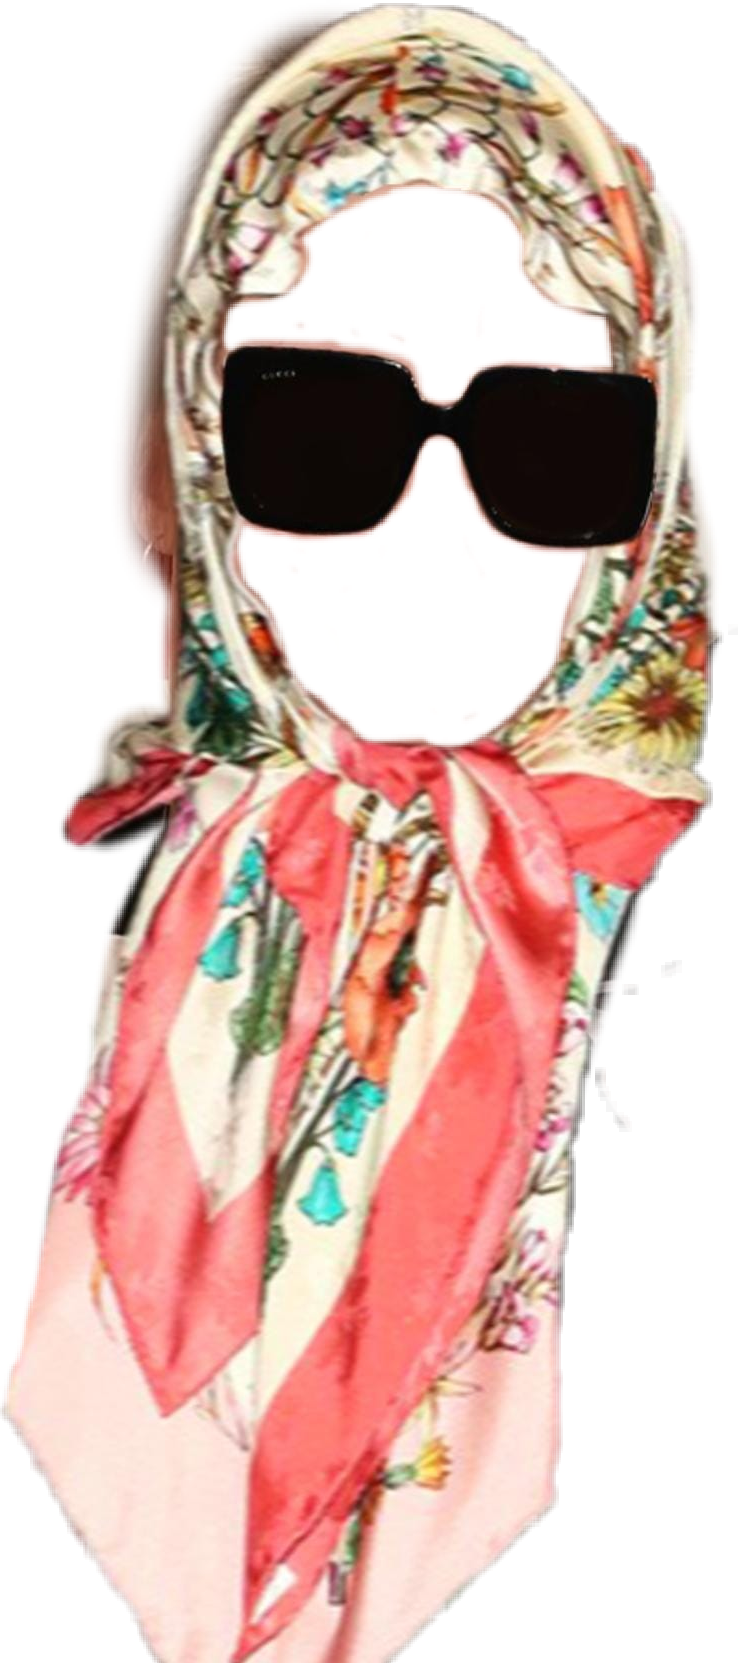 Аленка платок. Michele Wittamer платок. Платок ruban. Платок на белом фоне. Женский платок и очки.